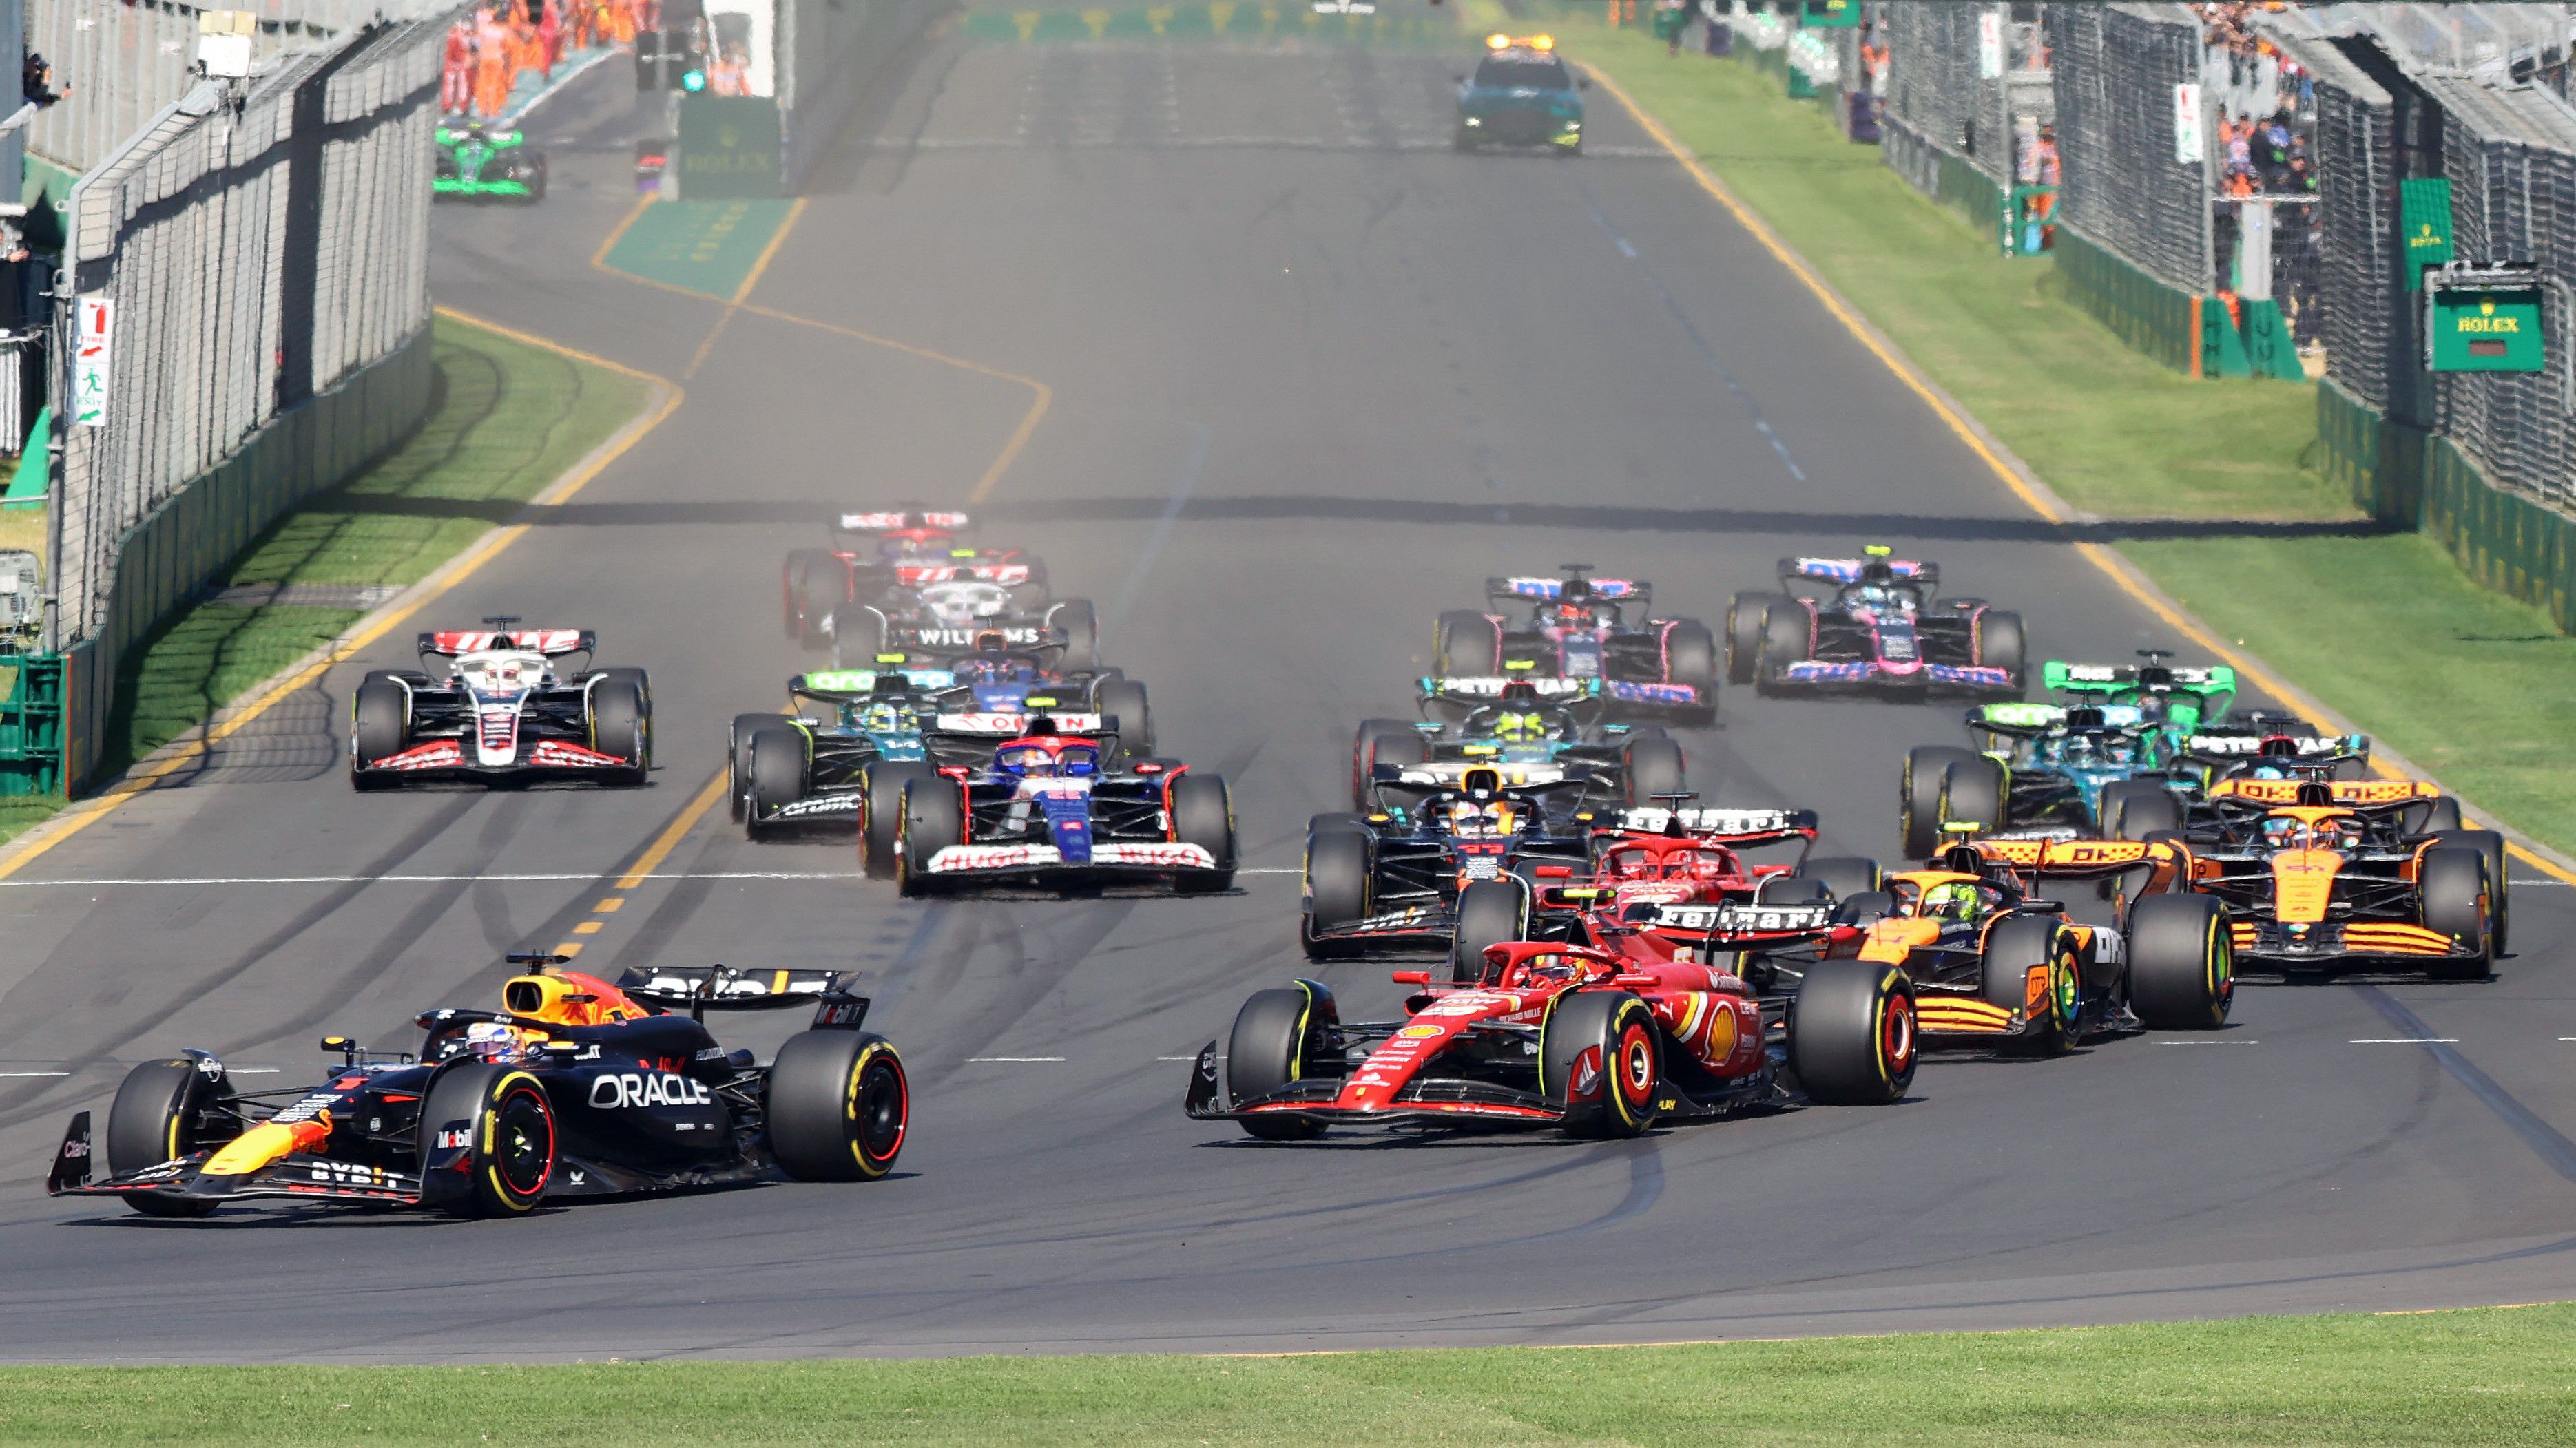 El Gran Premio de Australia de este año seguirá siendo memorable incluso con las reglas actuales...